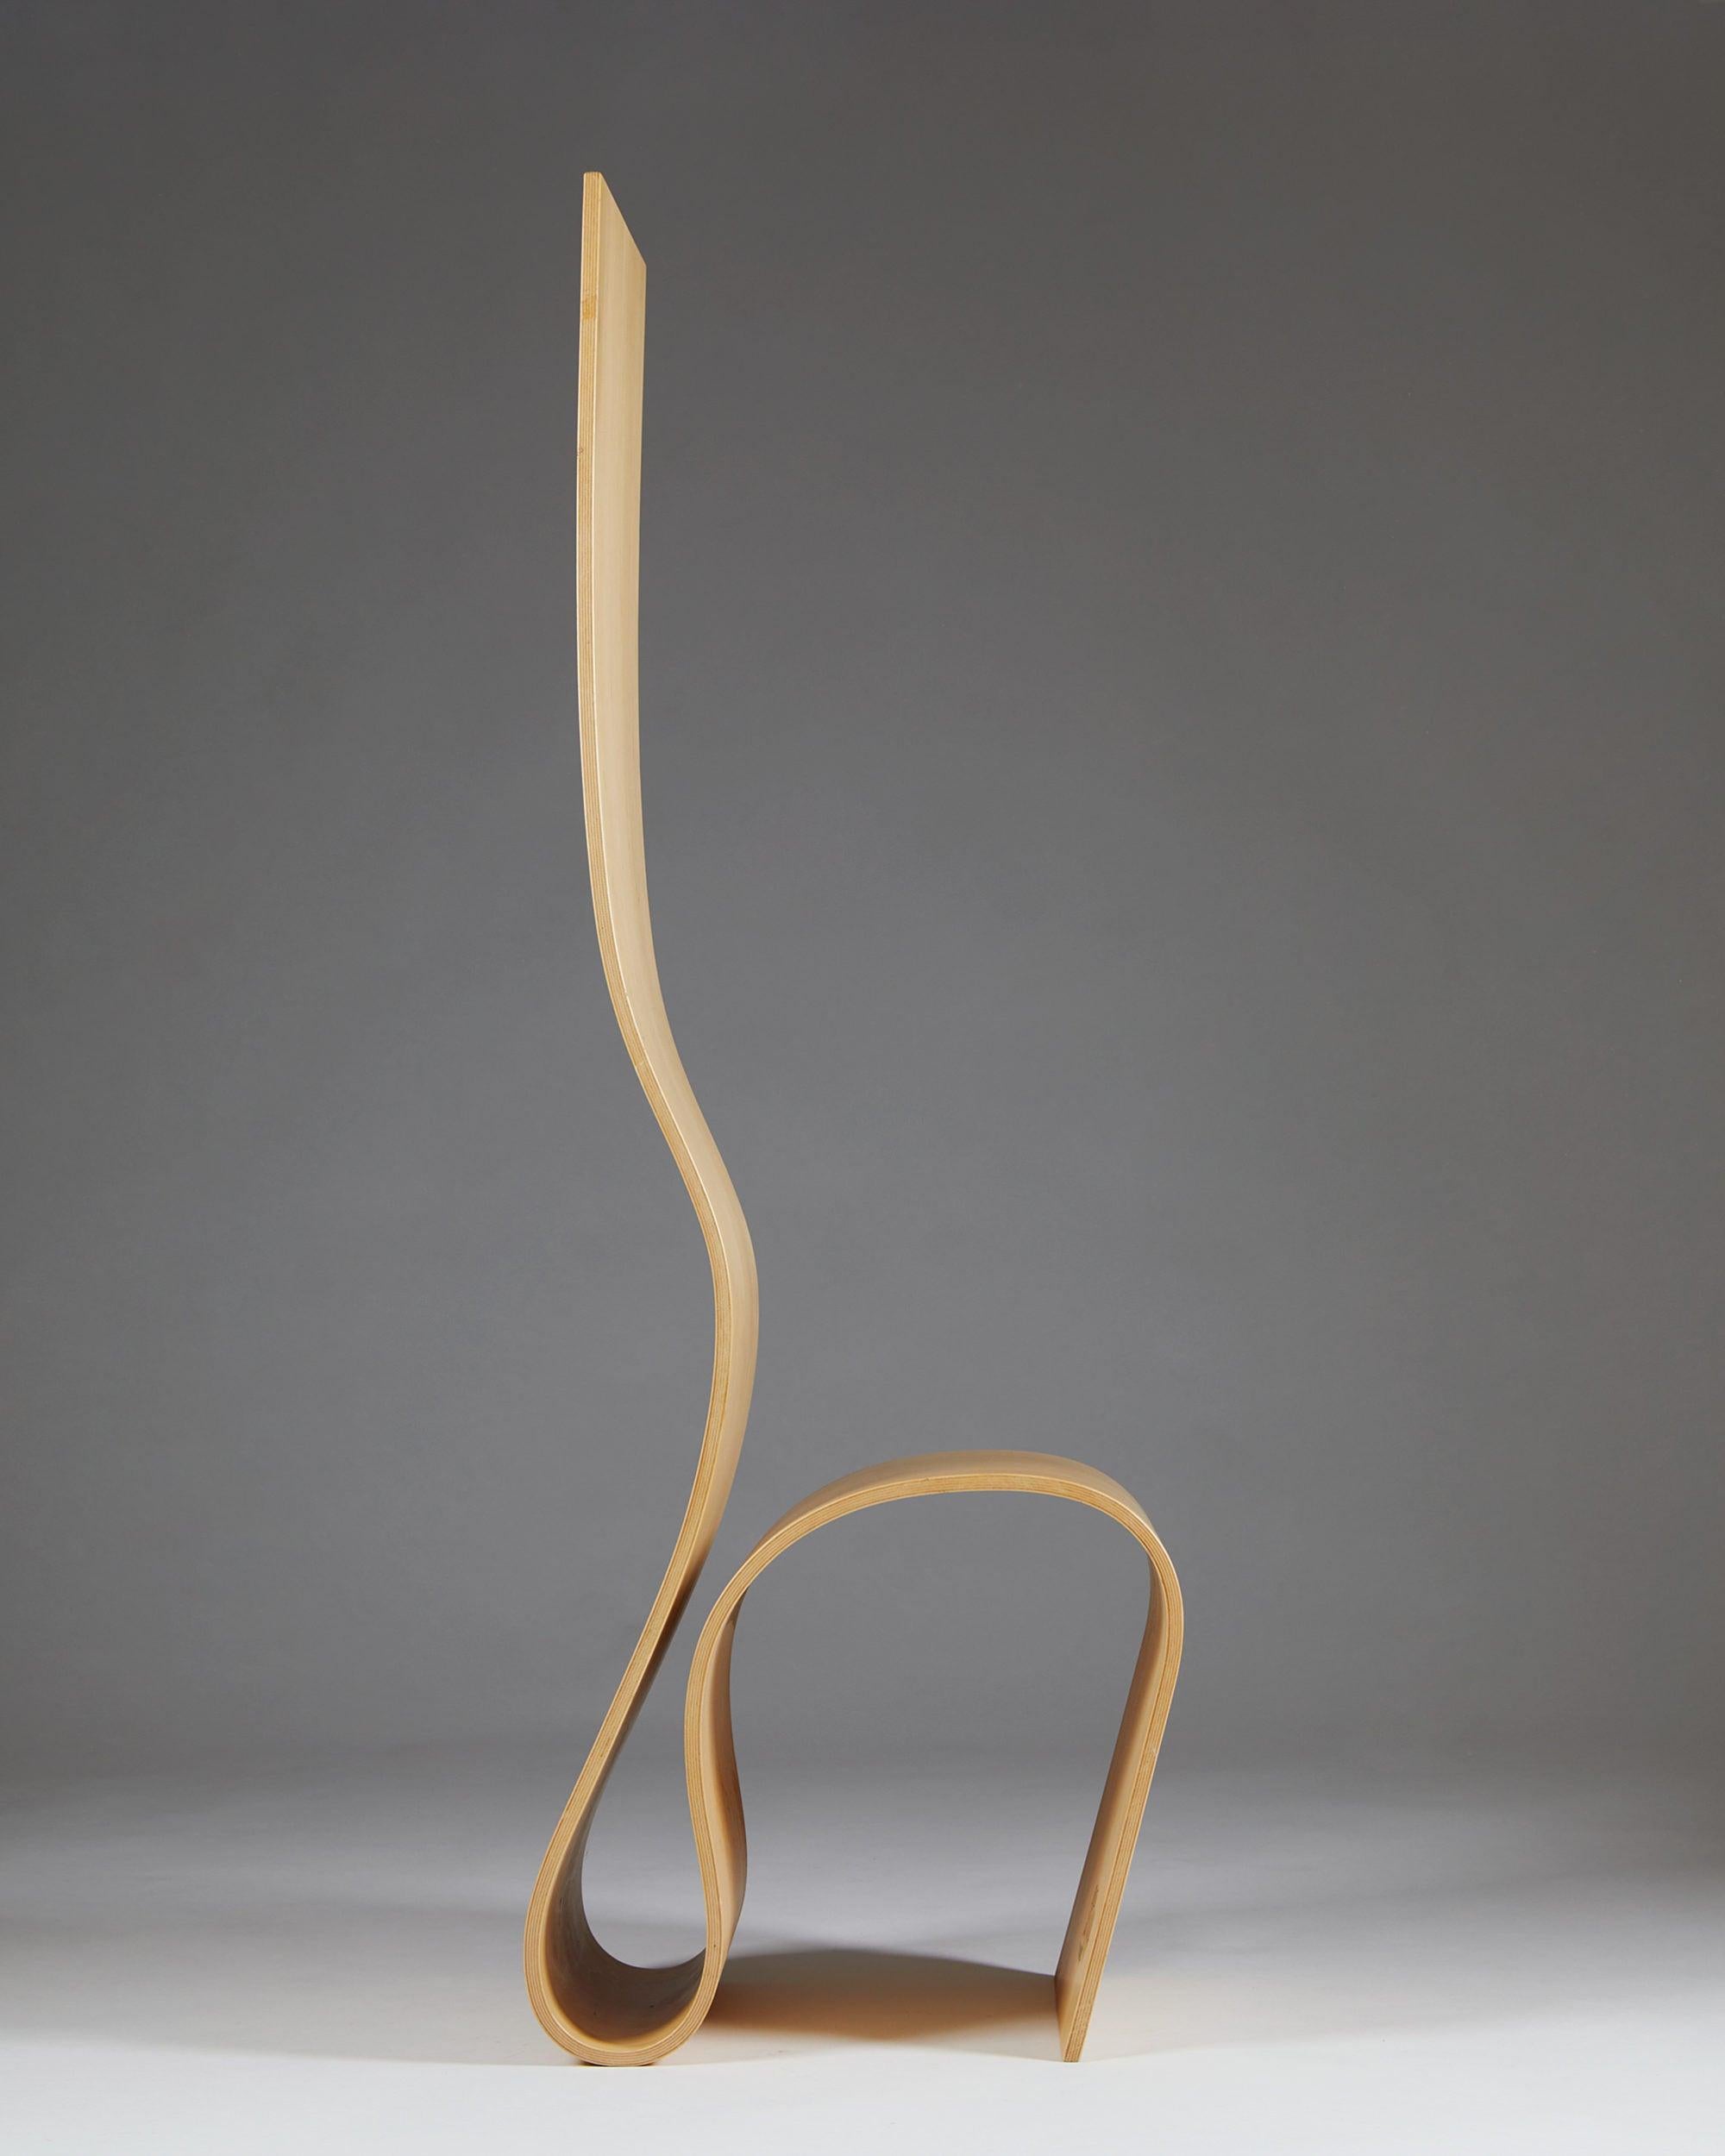 Chair, Lilla H. designed by Caroline Schlyter, Sweden, 1989.
Birch plywood.

Measures: H 150 cm/ 4' 11